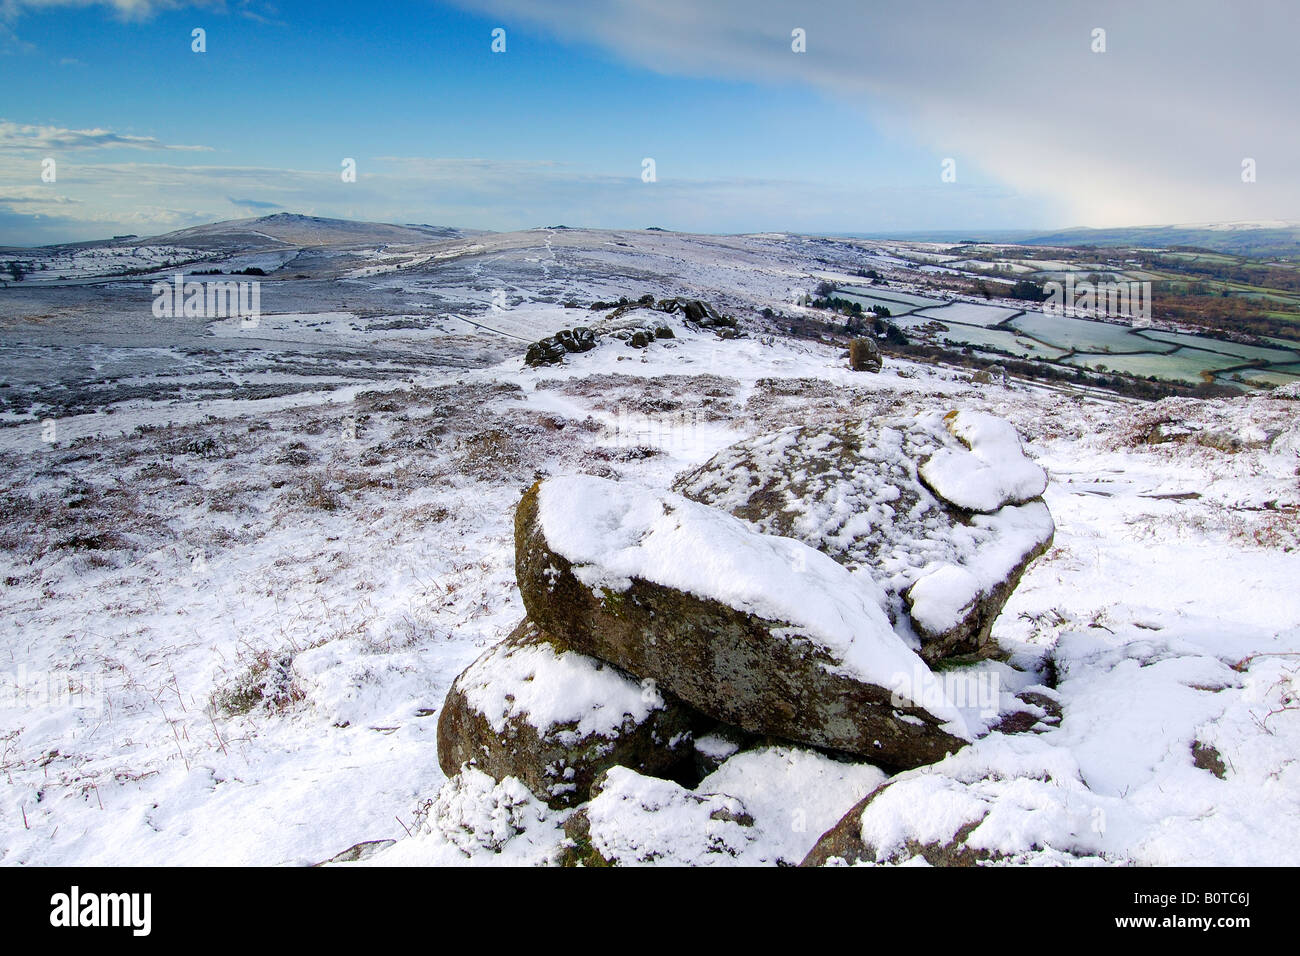 Le poids de la neige près de Chinkwell Tor sur le parc national du Dartmoor avec deux rochers de granit à l'avant-plan et widecombe vallée au-delà Banque D'Images